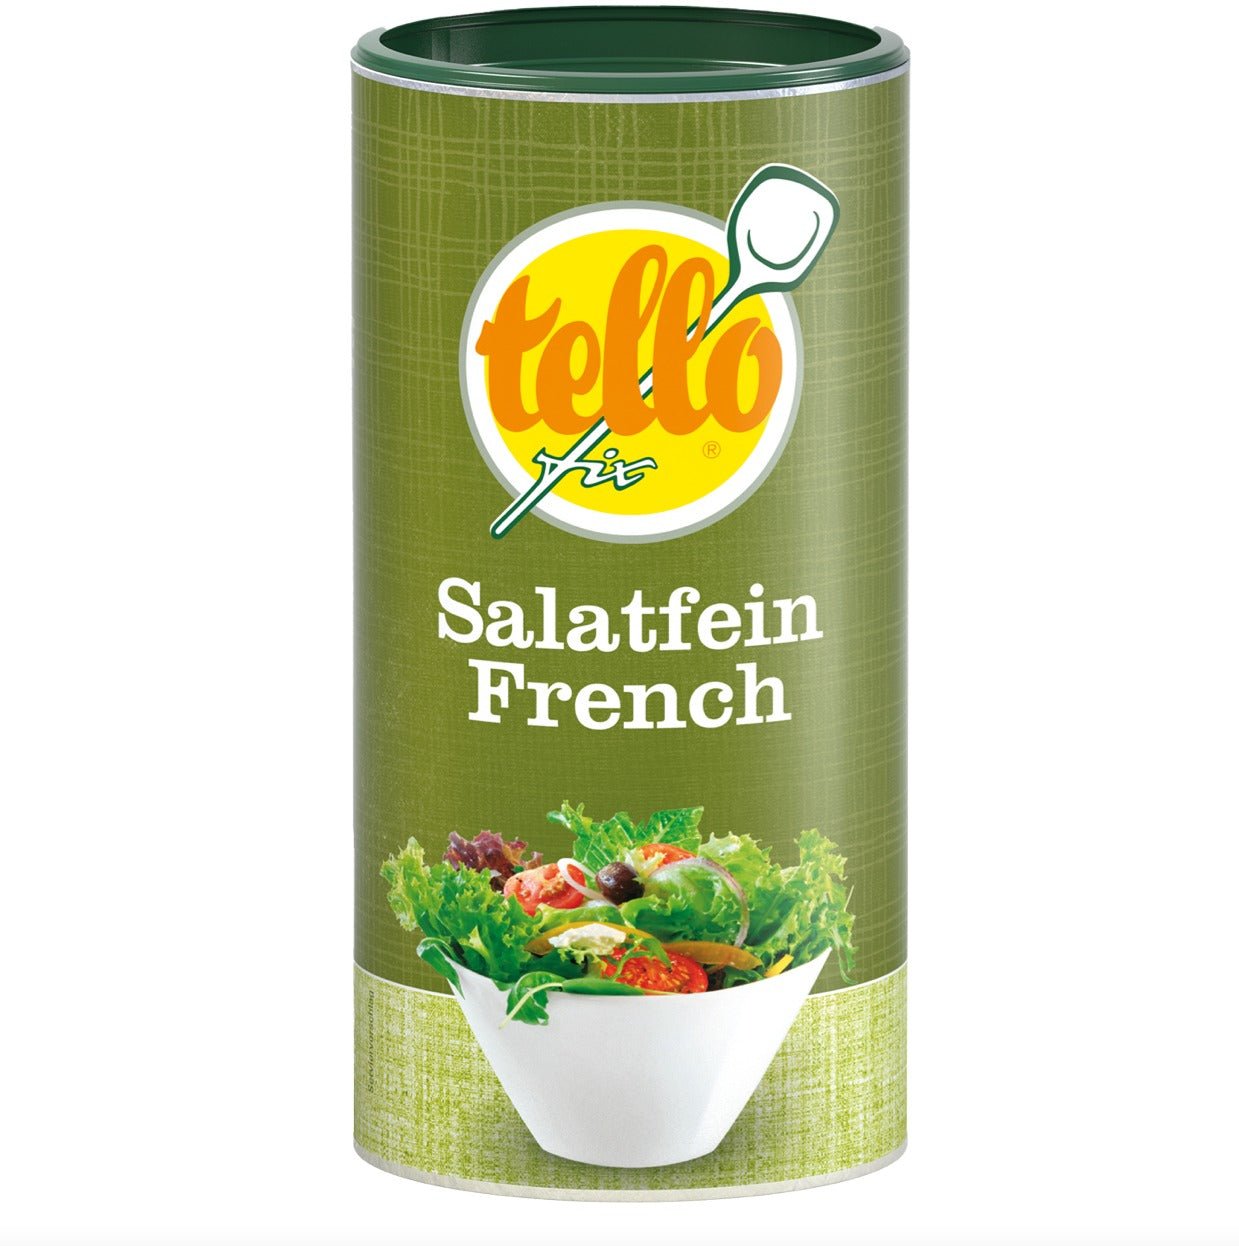 Entdecken Sie das köstliche und vielseitige tellofix Salatfein French Dressing - Feinkost Delikatessen: Wurst und Fleisch Spezialitäten | Wurst-Fleisch.com